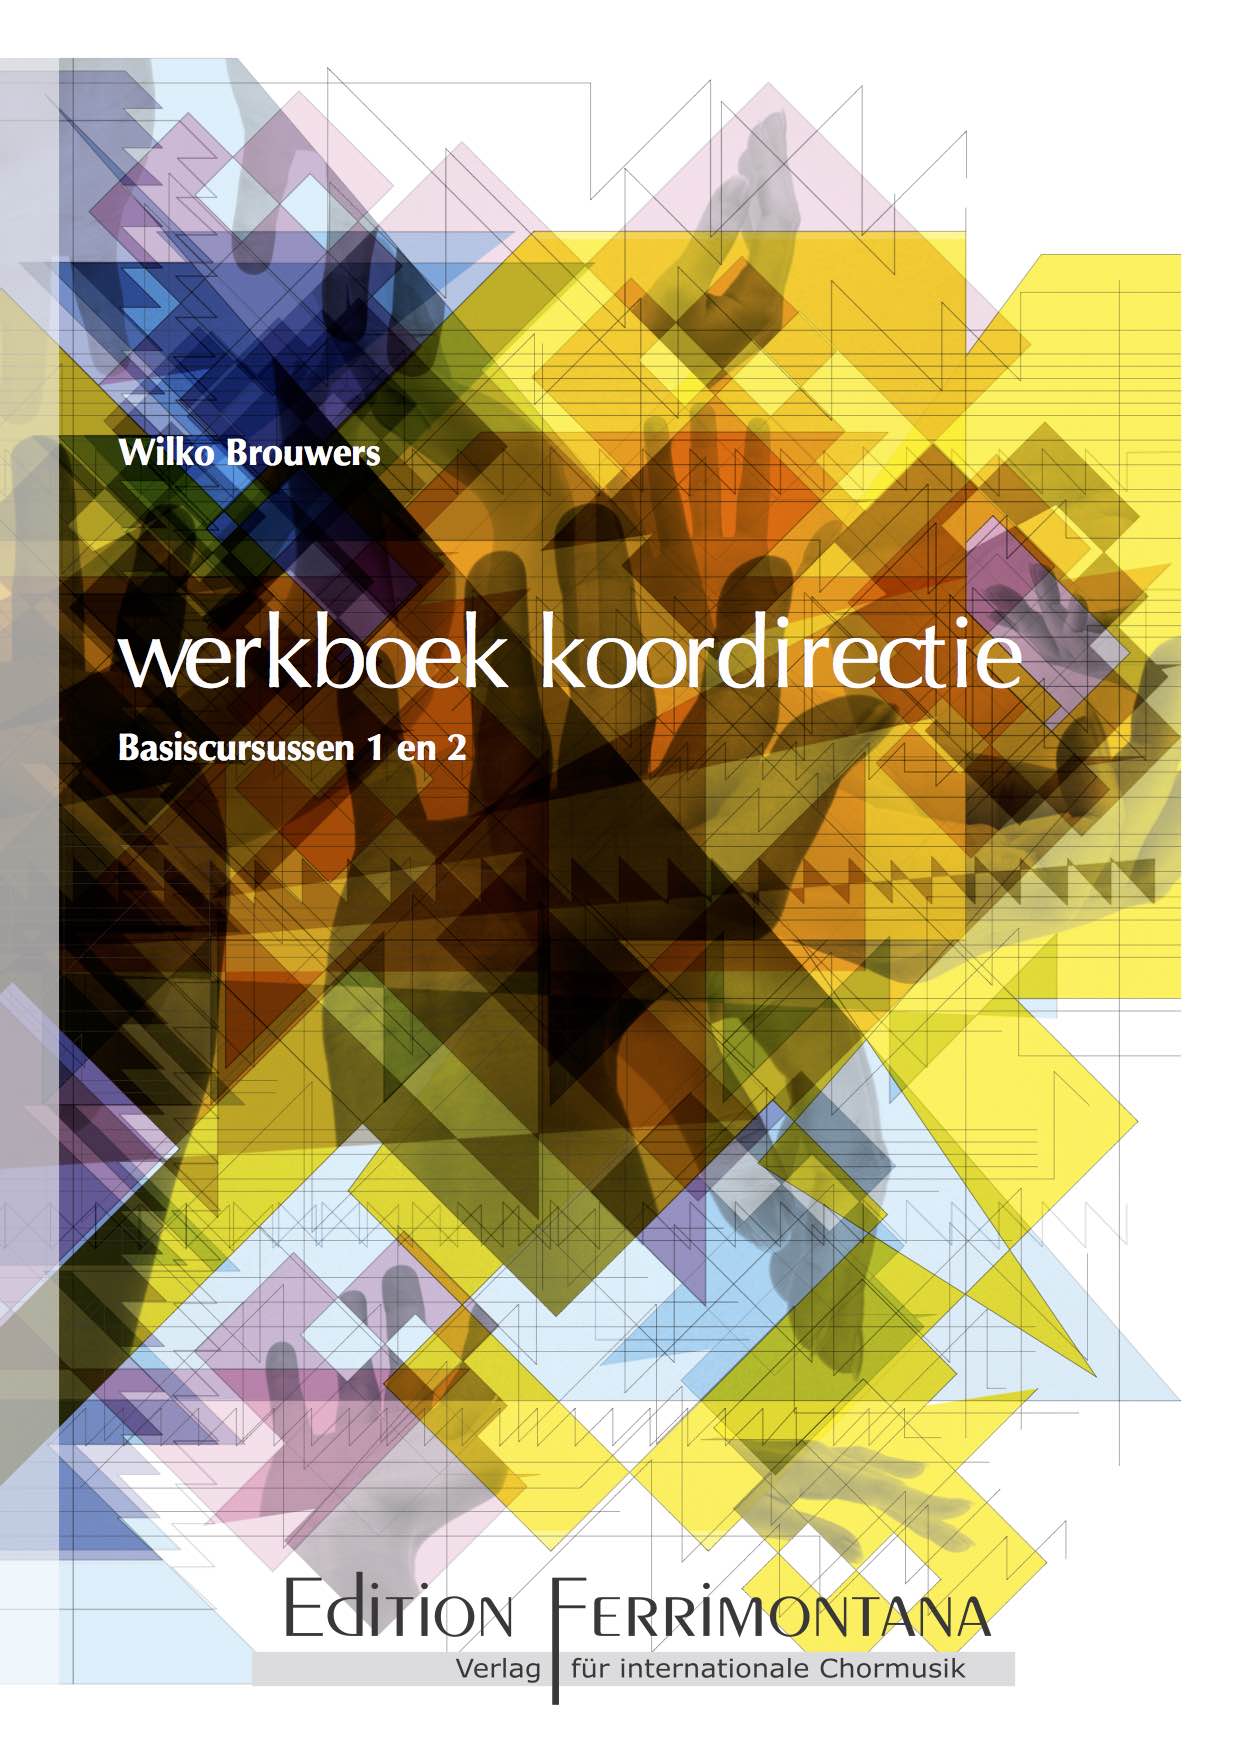 Basiscursus Koordirectie - Herziene uitgave september 2015